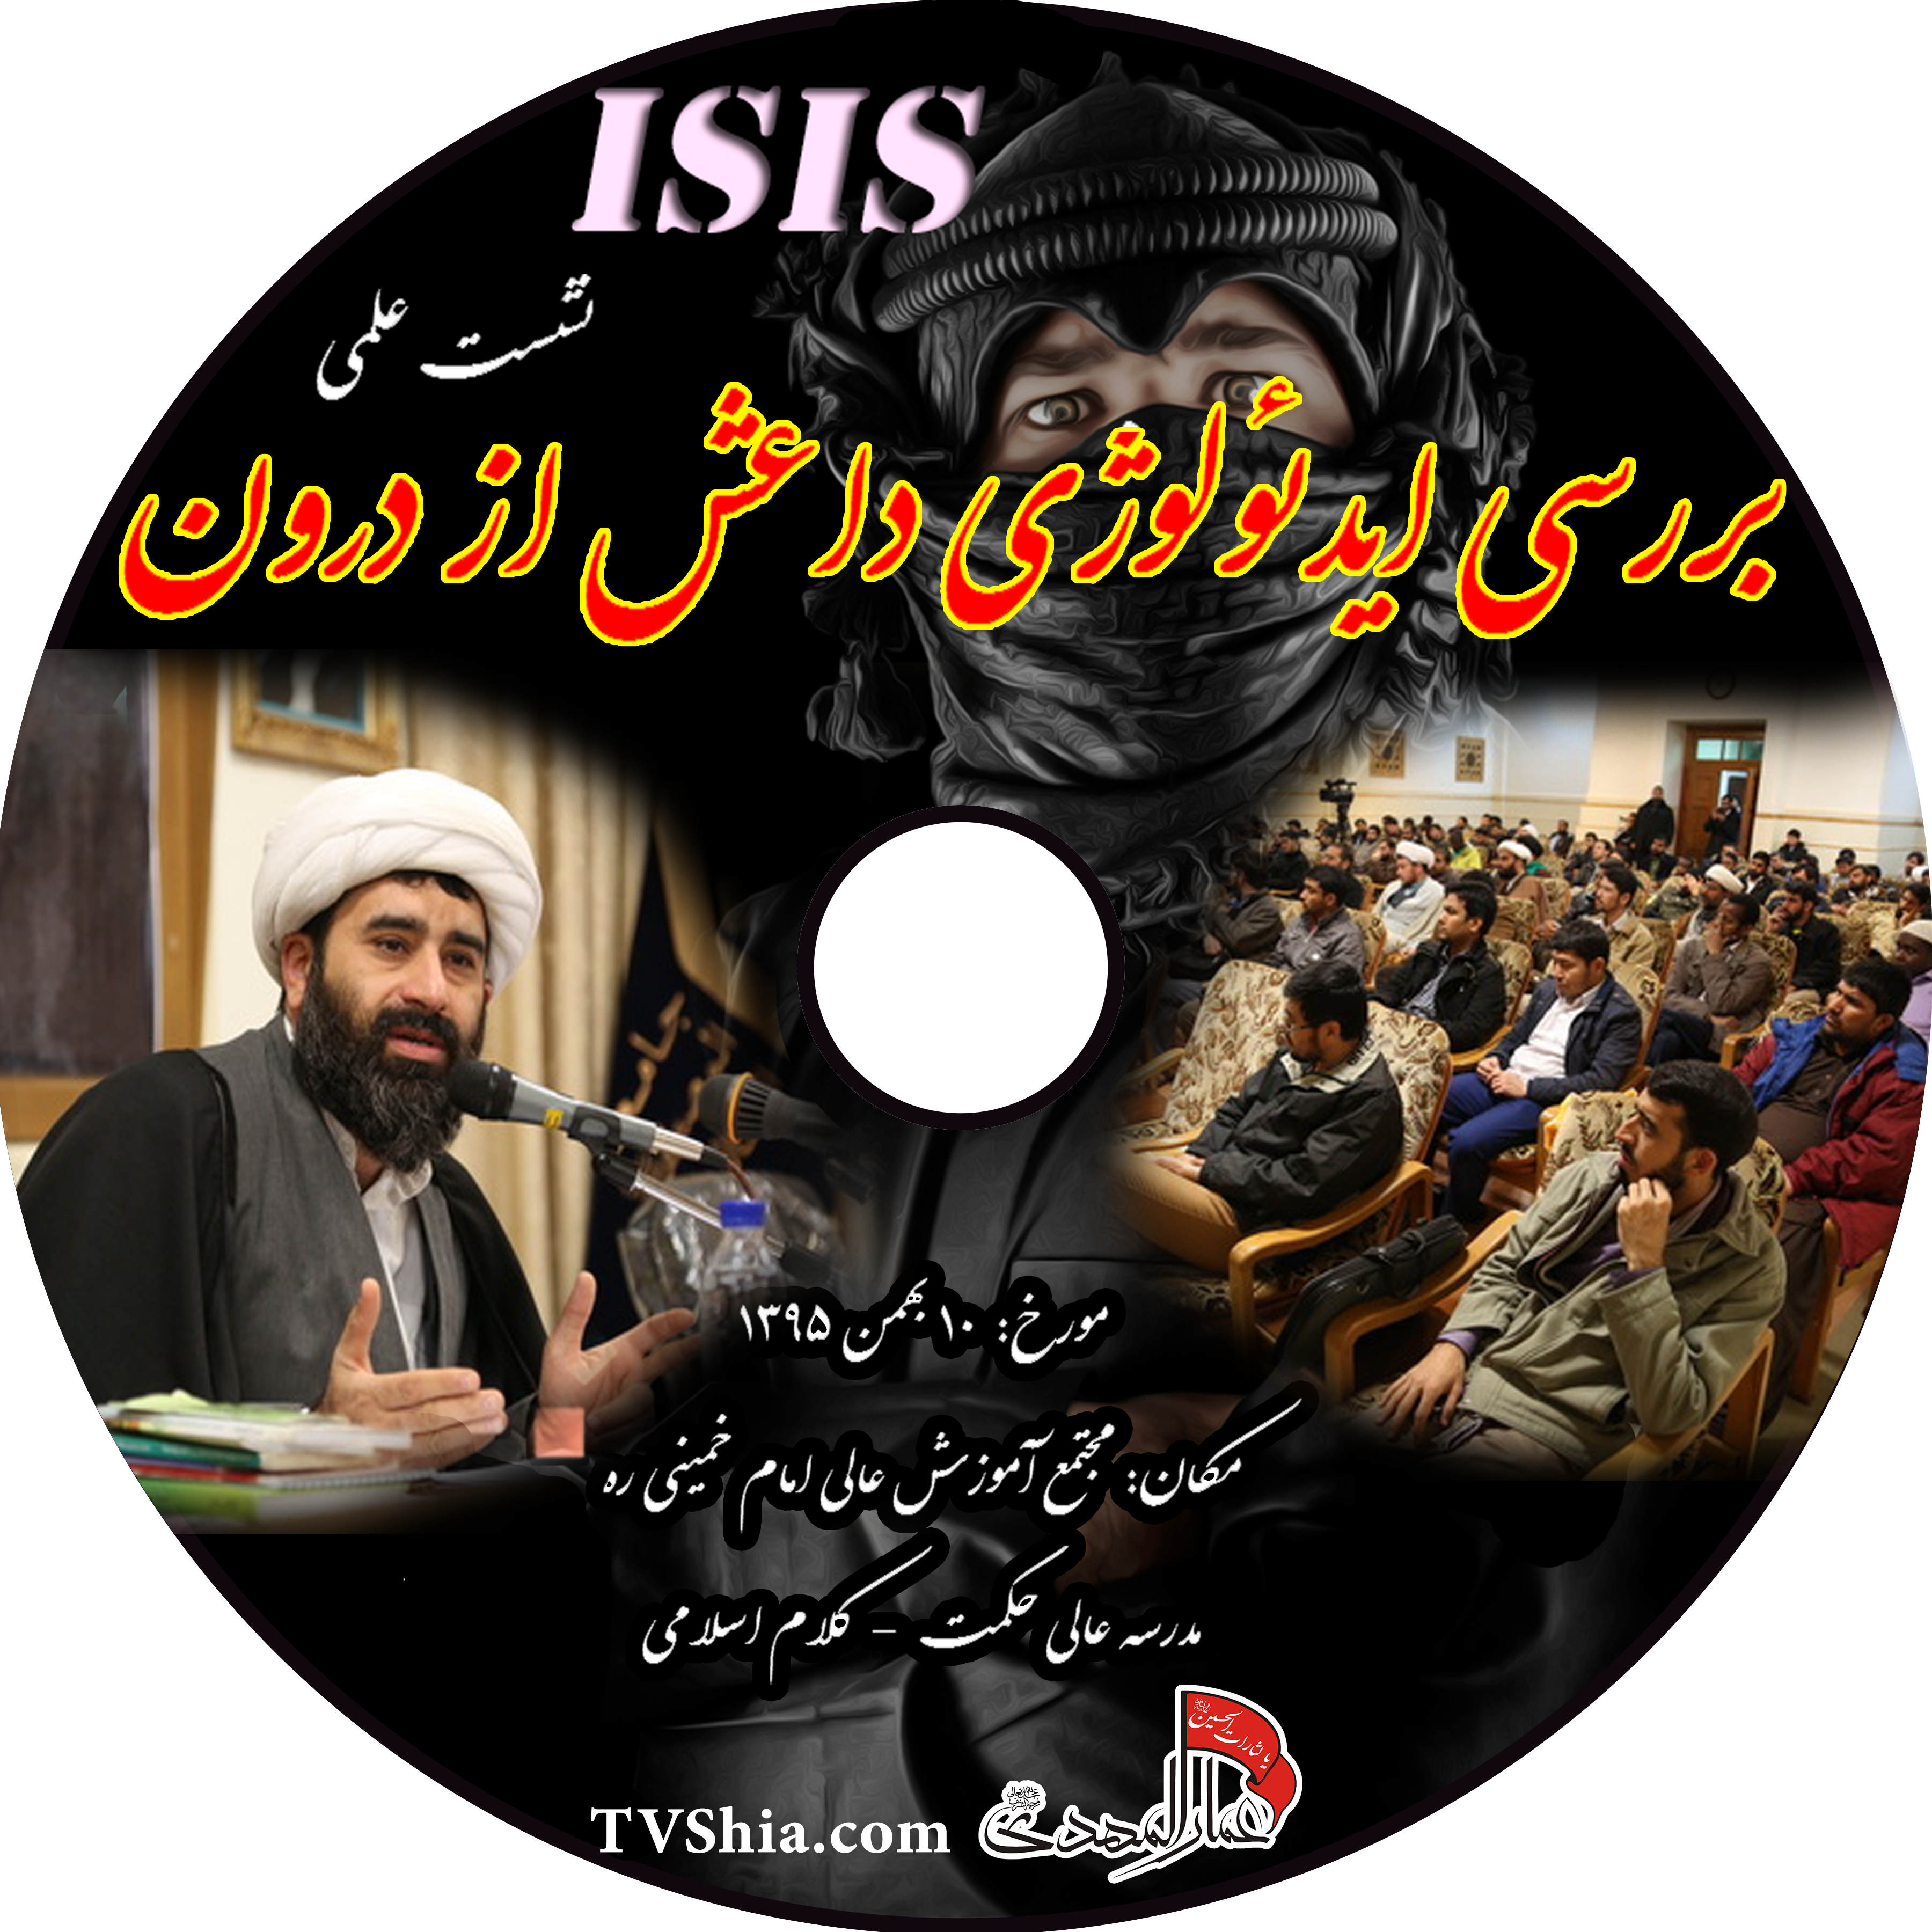 بررسی ایدئولوژی فکری داعش از درون + فیلم و صوت سخنرانی